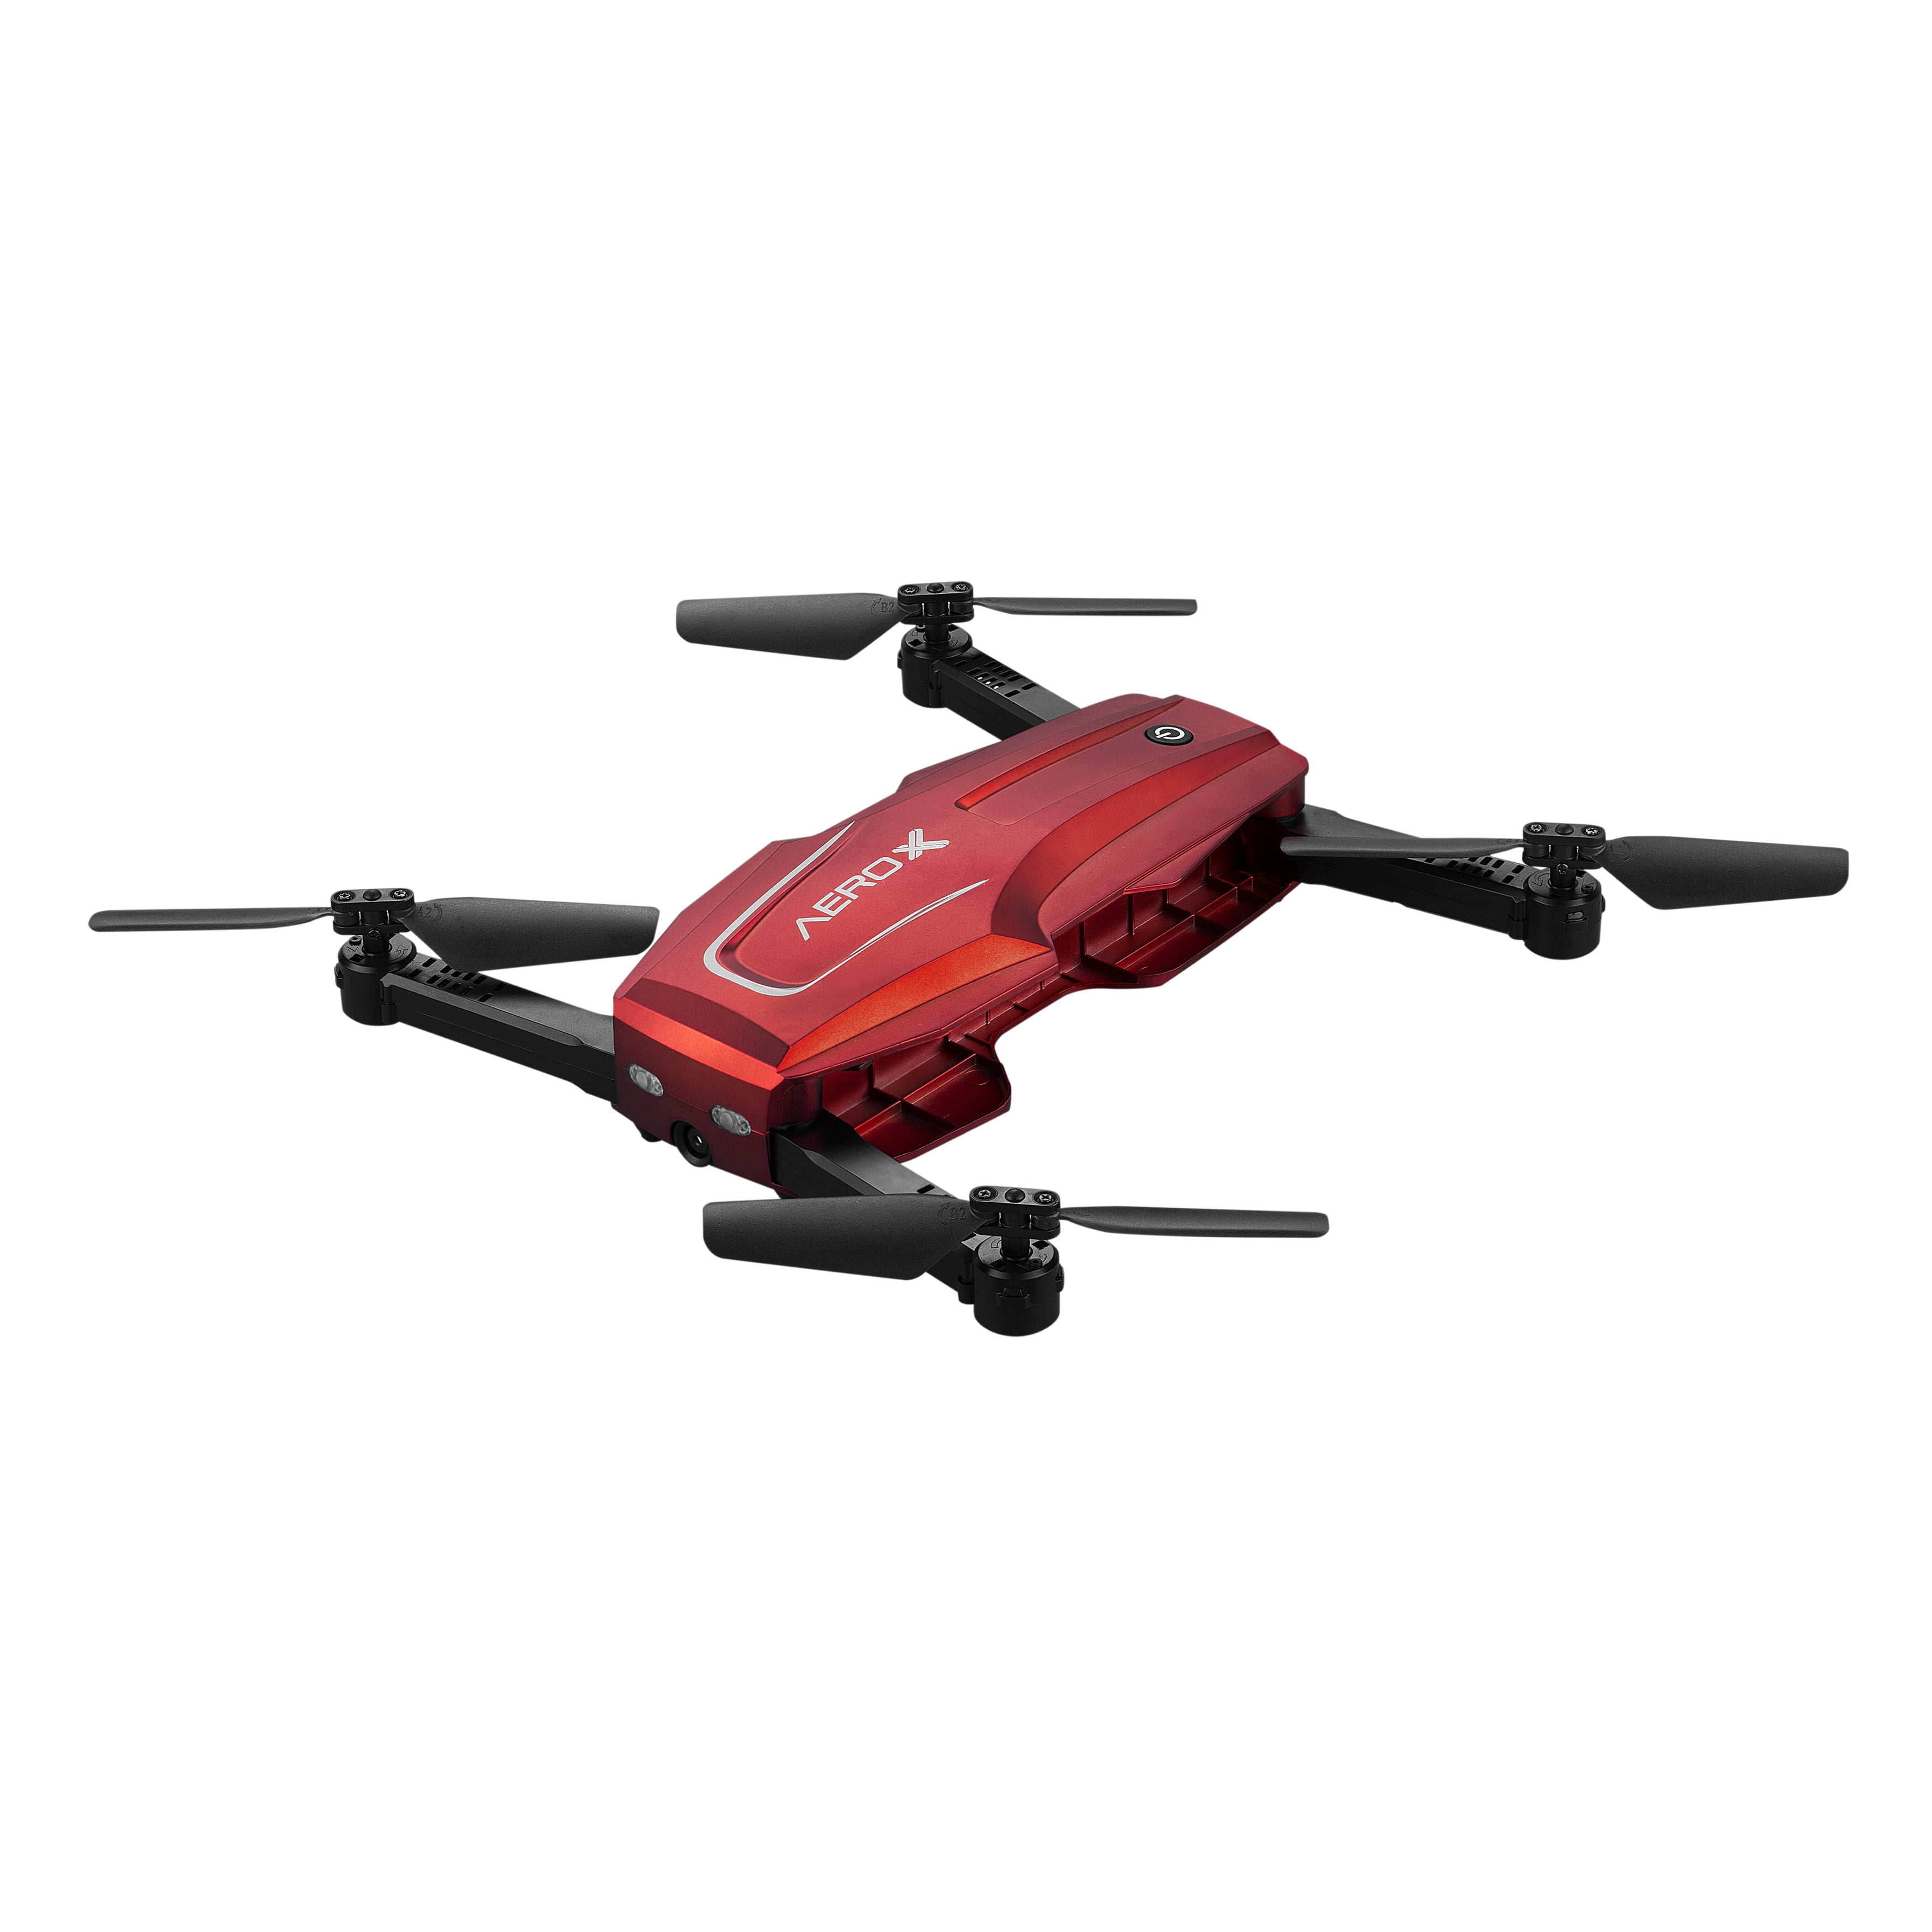 aero x maximum drone